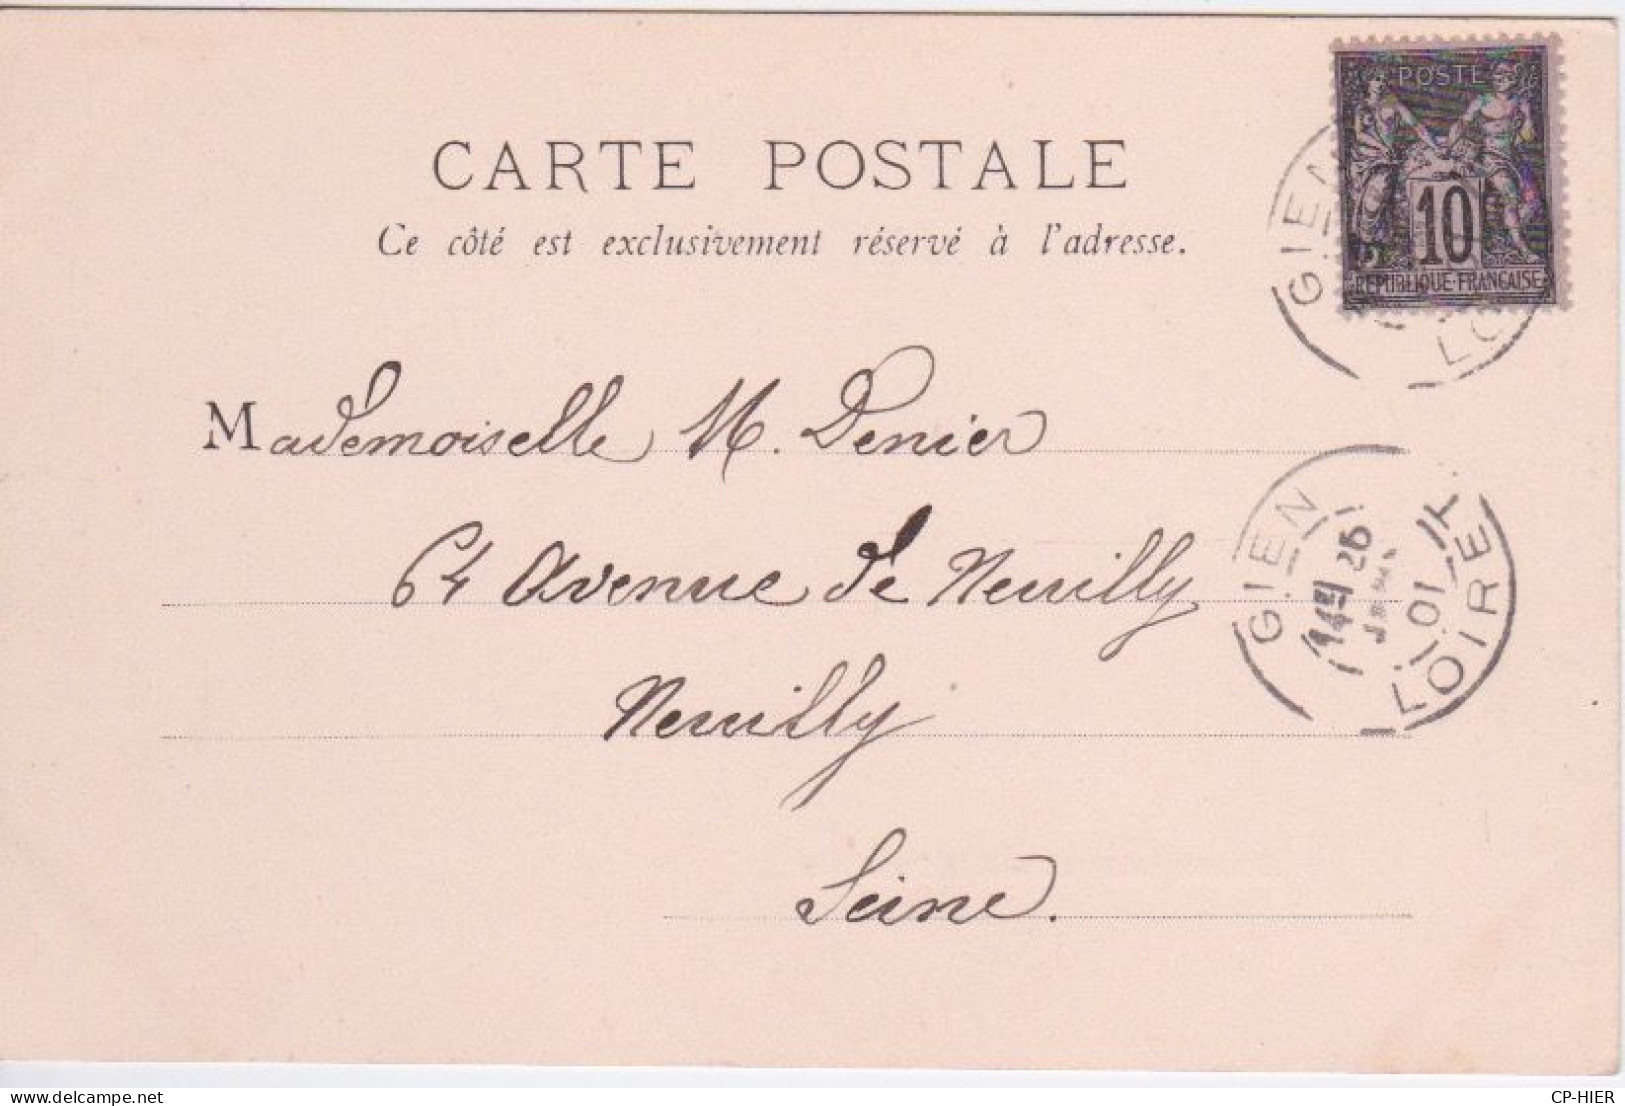 63 - AUVERGNATS ALLANT A LA VILLE EN CHEVAL - CARTE ECRITE DE NEVOY + CACHET POSTAL  DE GIEN 45  EN 1901 - Auvergne Types D'Auvergne